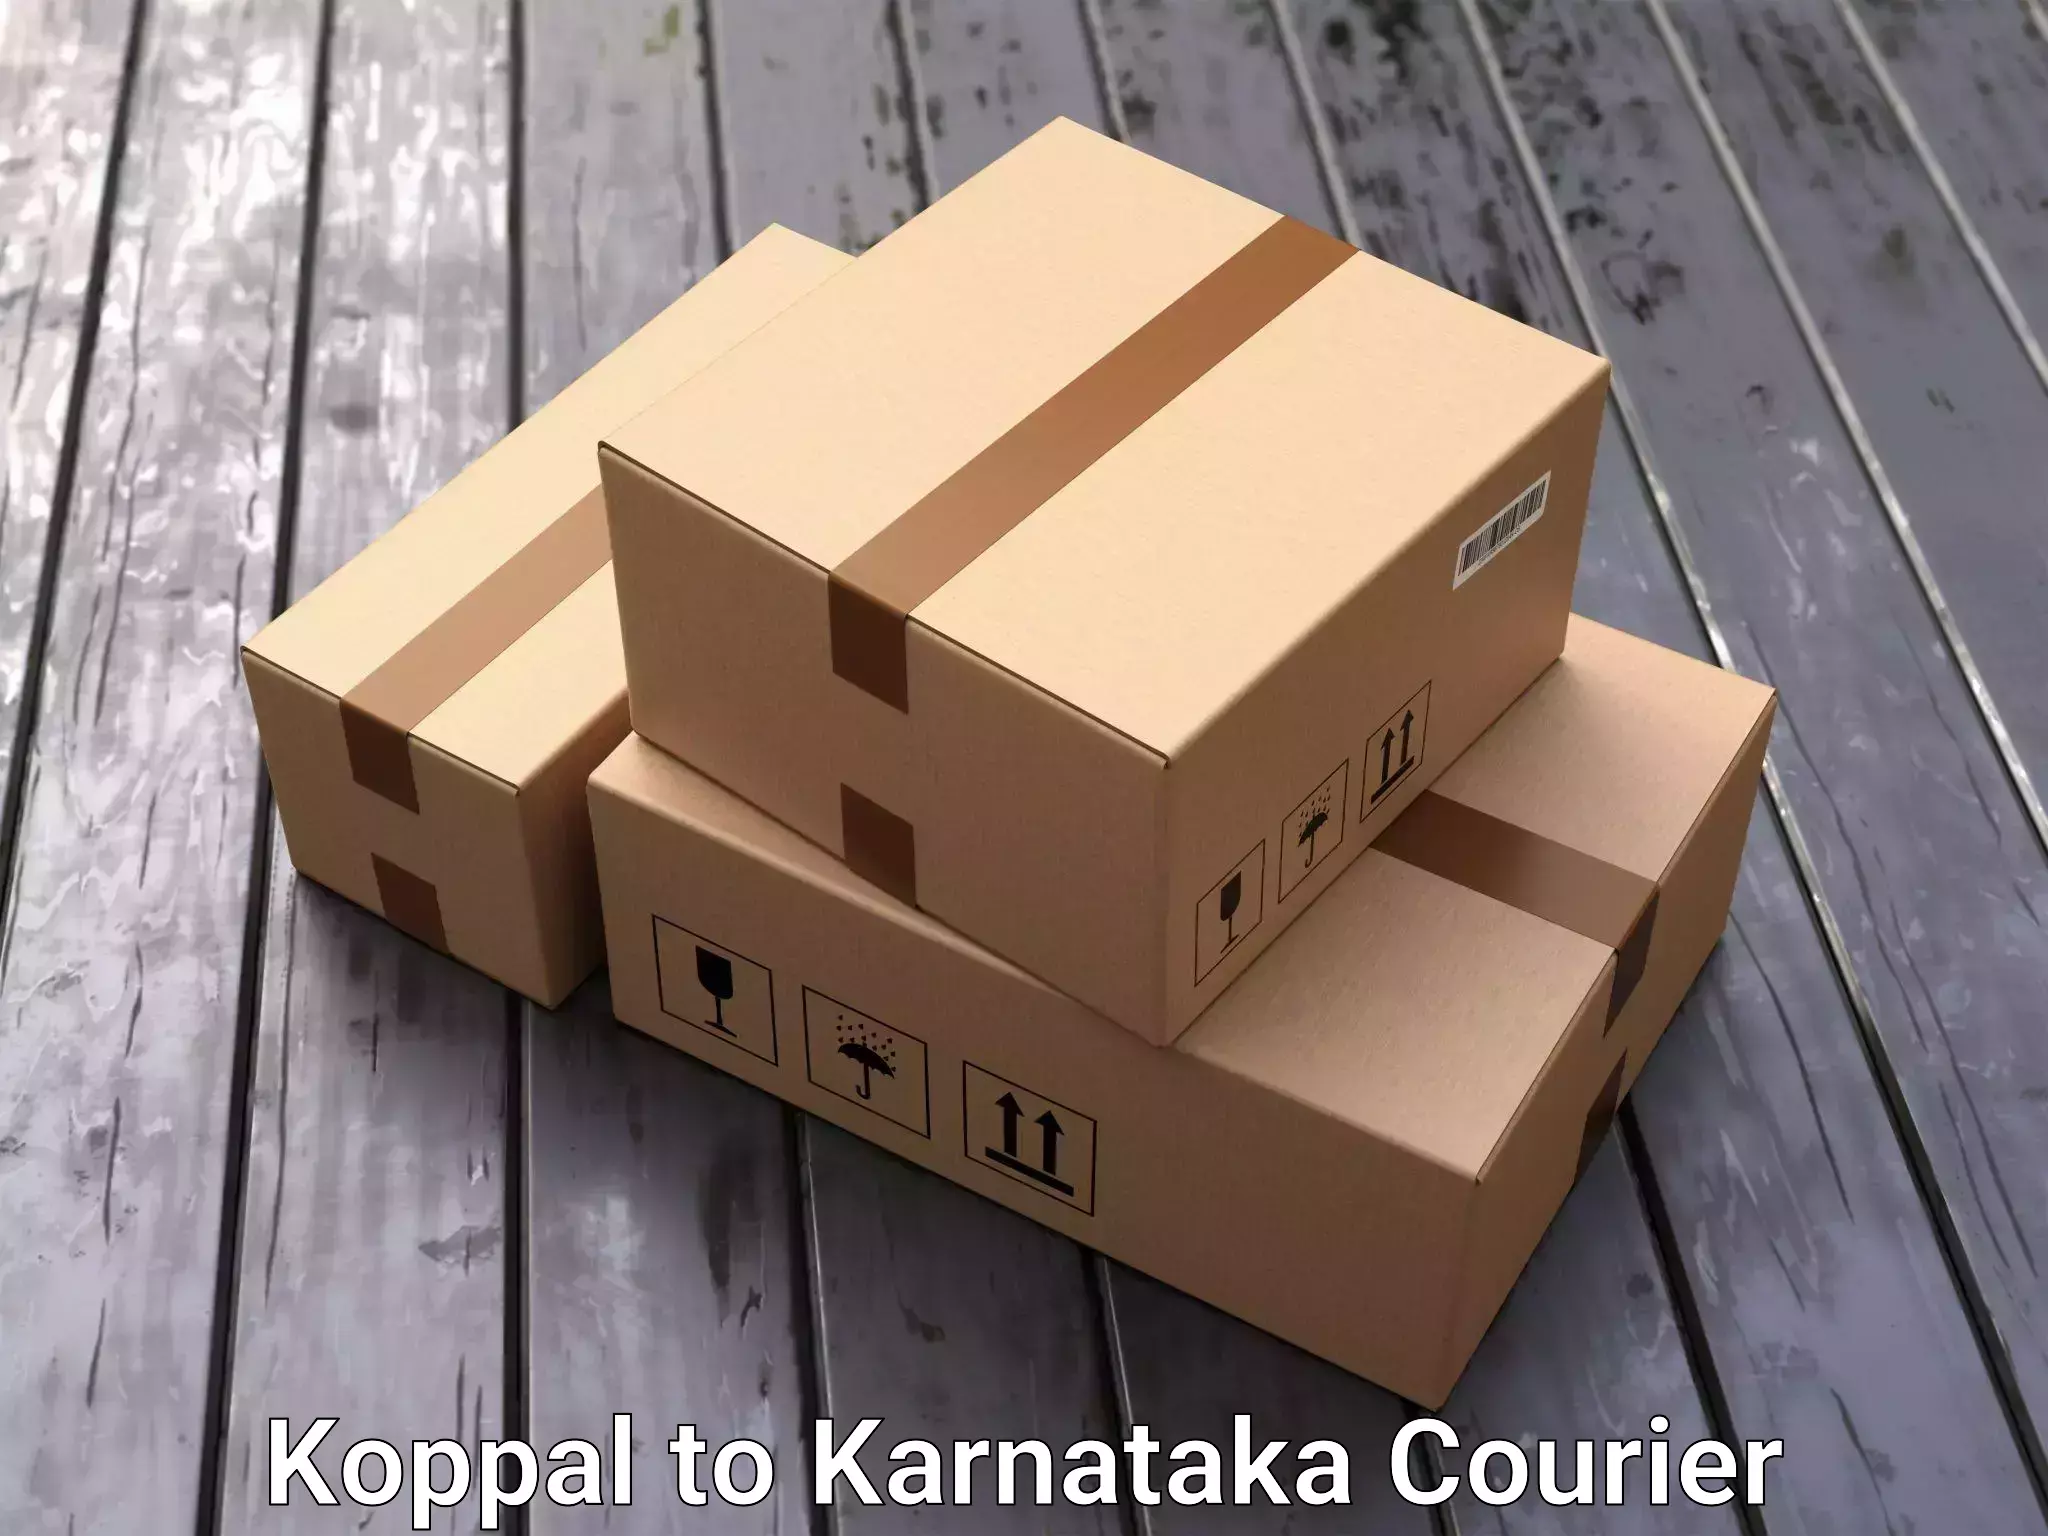 Professional packing and transport Koppal to Kanjarakatte